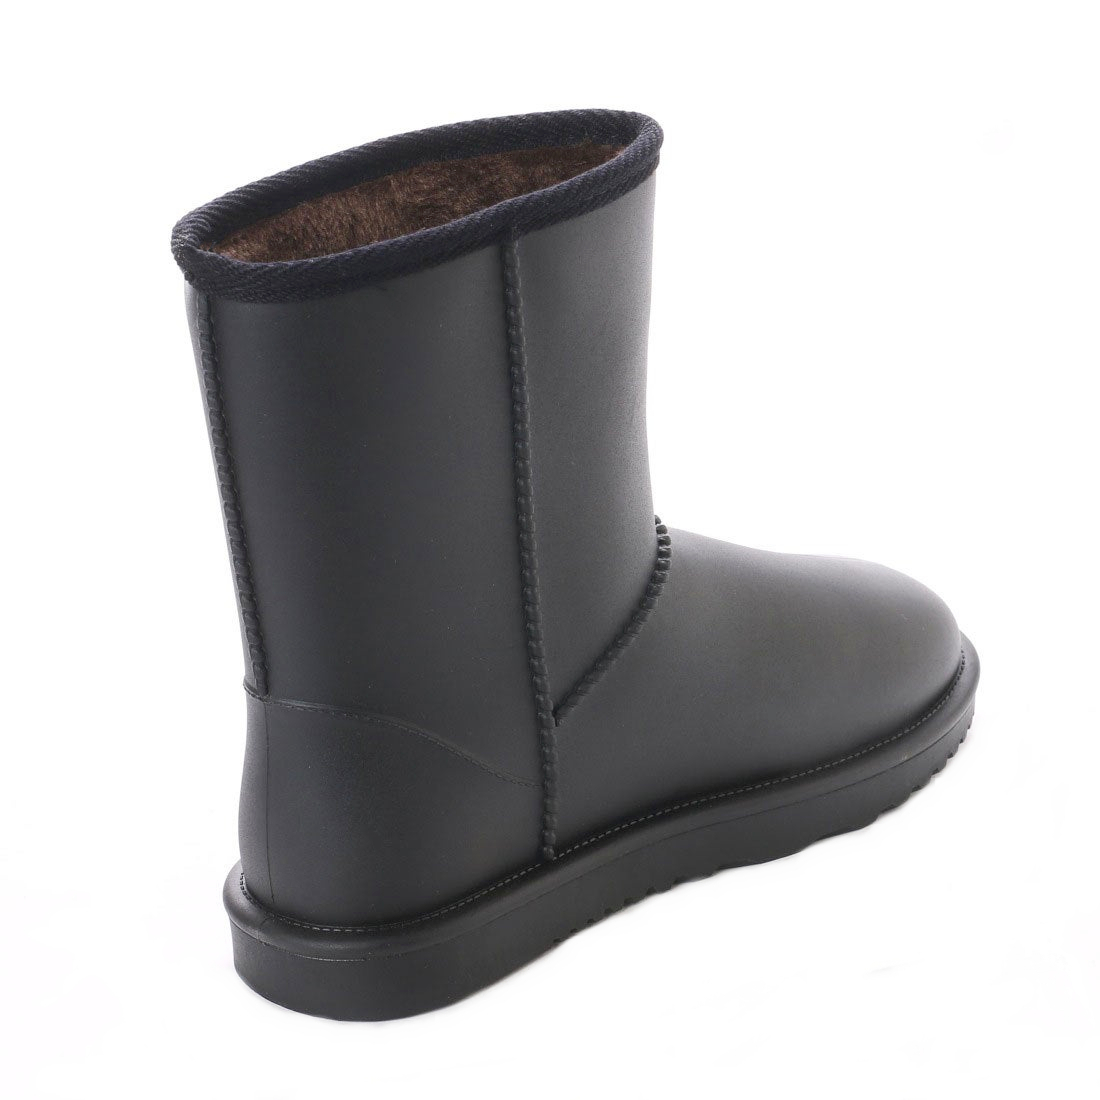 * новый товар * популярный *[21076_17.0 cm] для мужчин и женщин мутон ботинки 100% совершенно водонепроницаемый гарантия . дождь двоякое применение подкладка все боа имеется Family размер :17.0~28.0